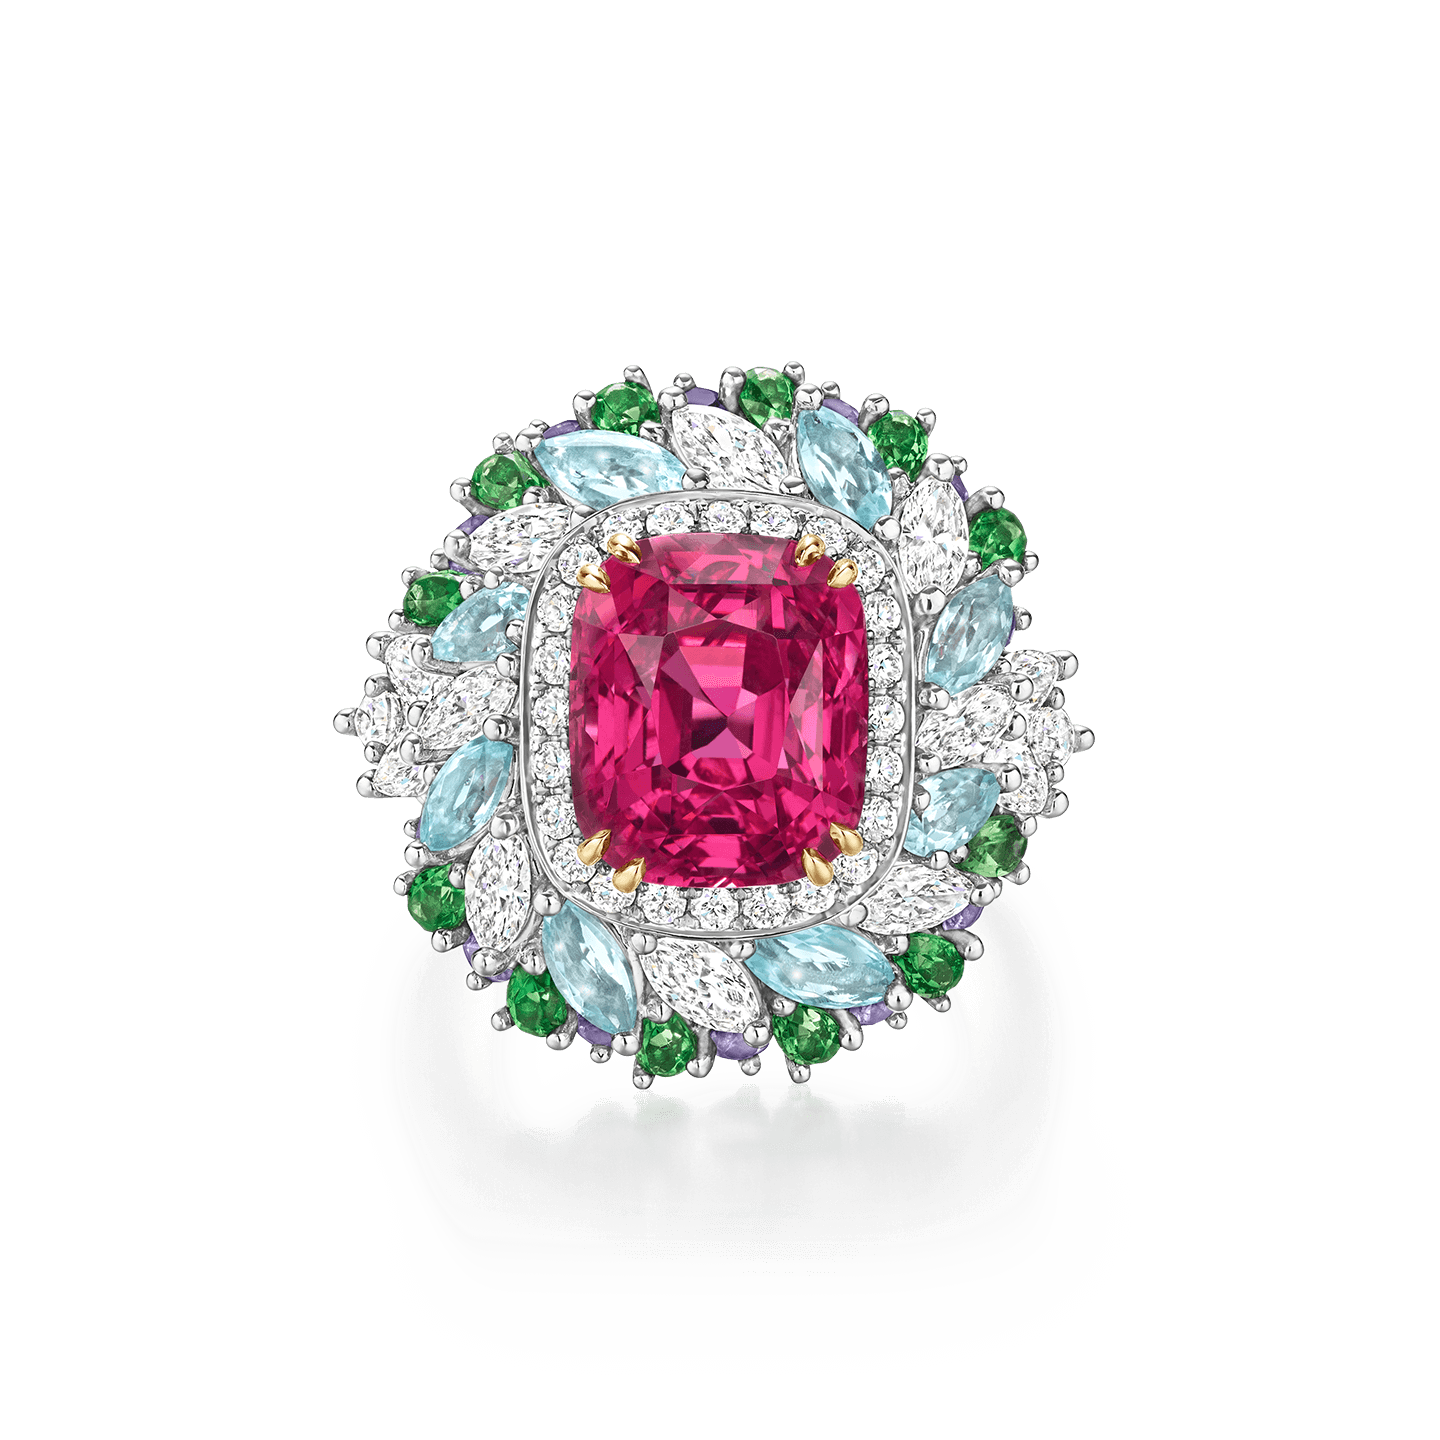 Winston Candy偏红色的粉色尖晶石戒指，搭配沙弗莱石、紫色蓝宝石、帕拉伊巴碧玺和钻石